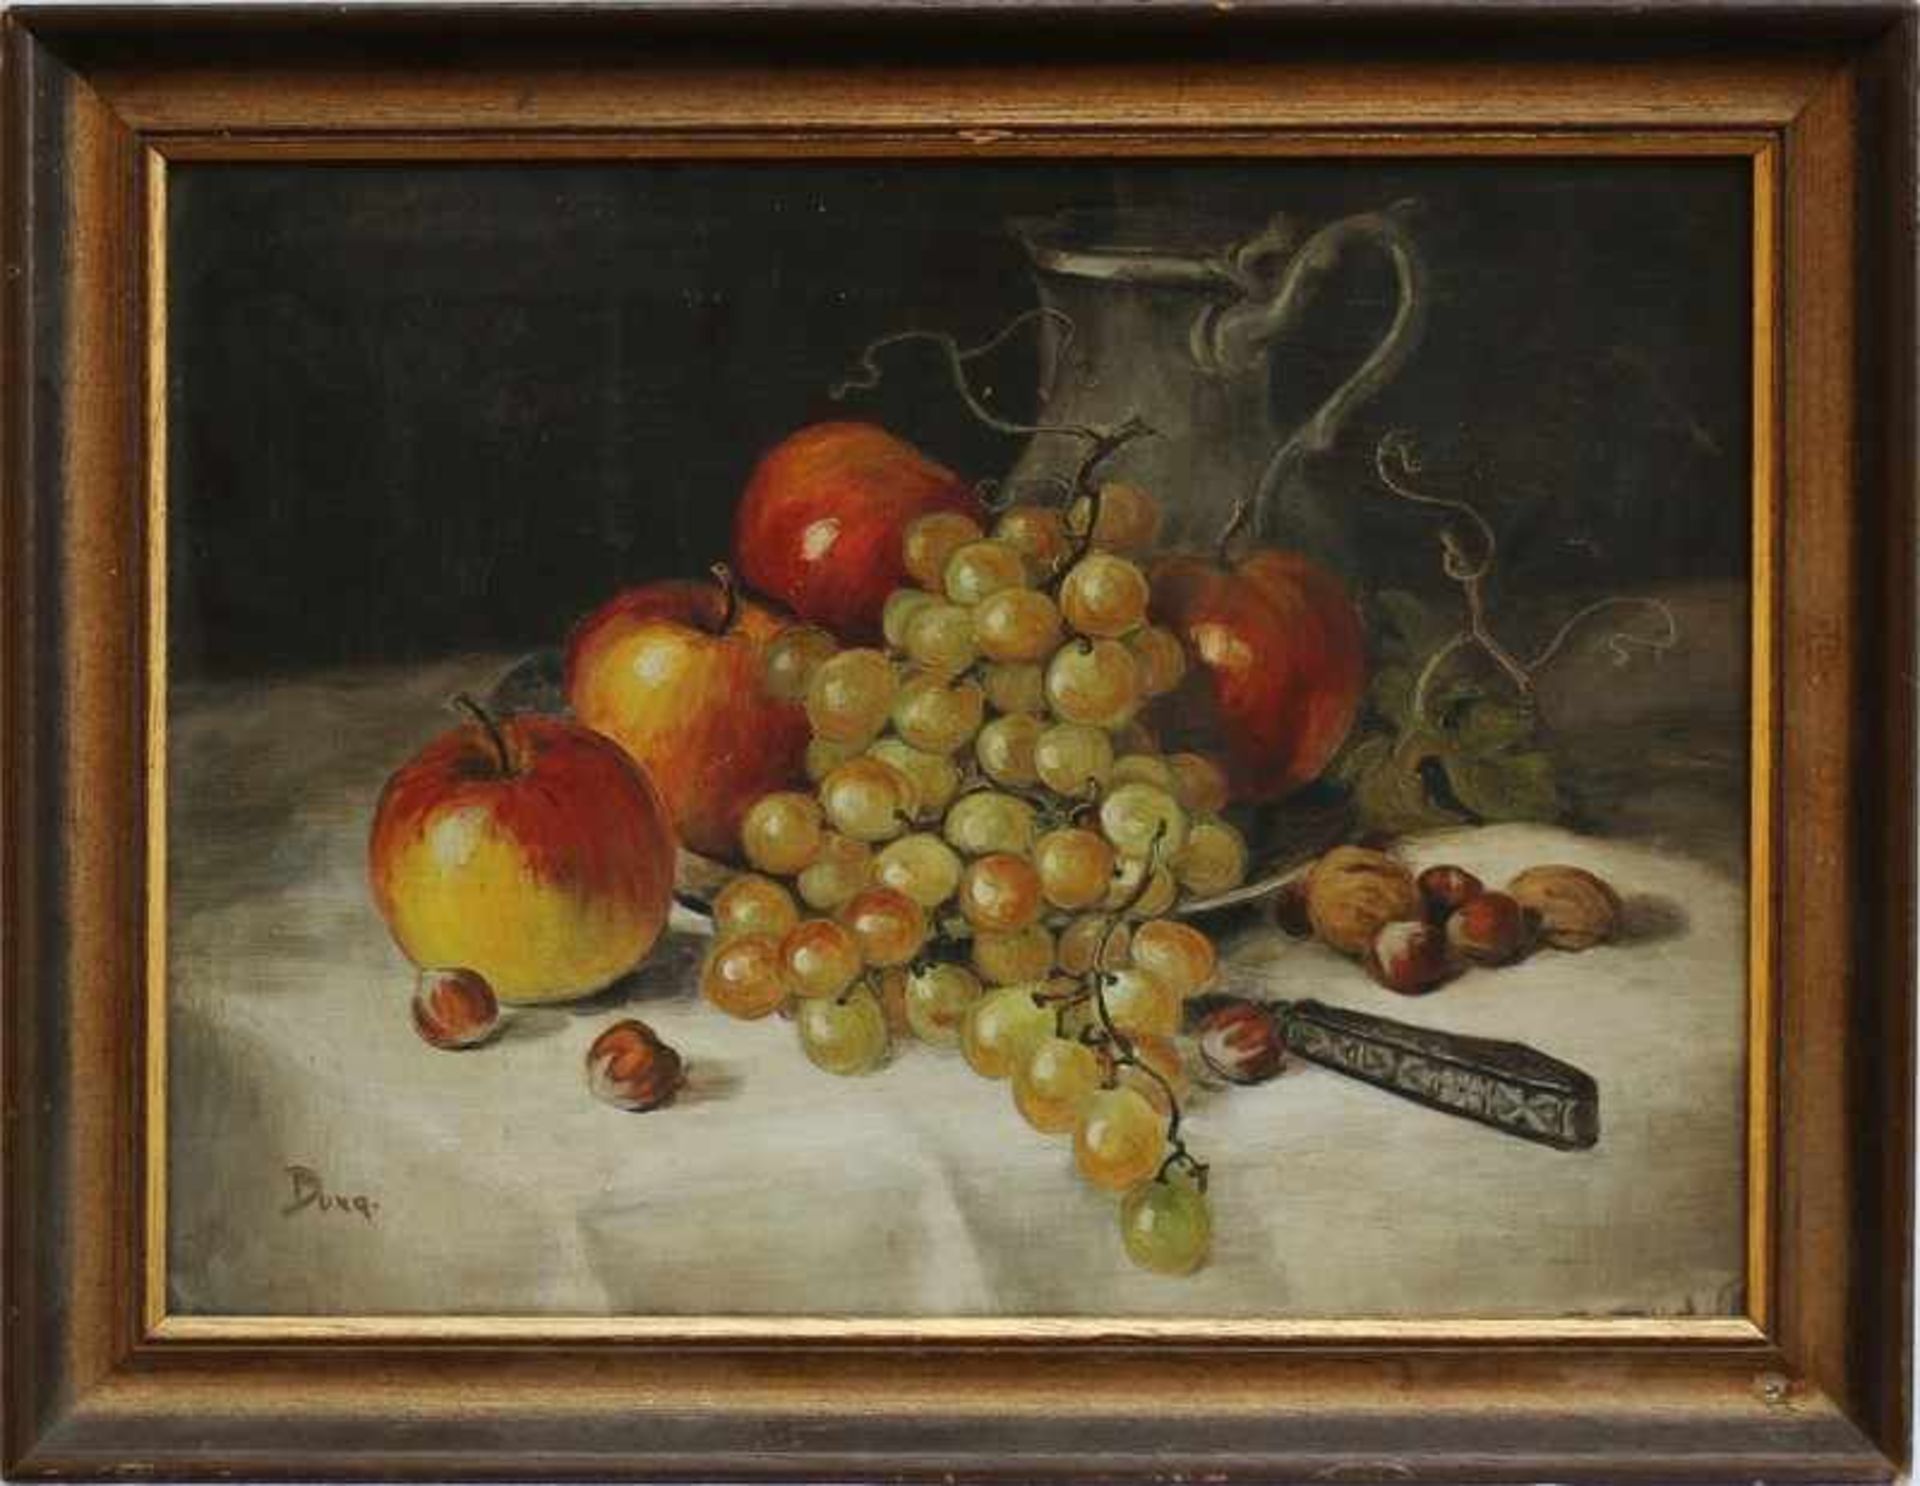 Duxa "Obststillleben mit Äpfel und Trauben", Öl/Lwd., gedeckte Farbpalette, lockerer Duktus,